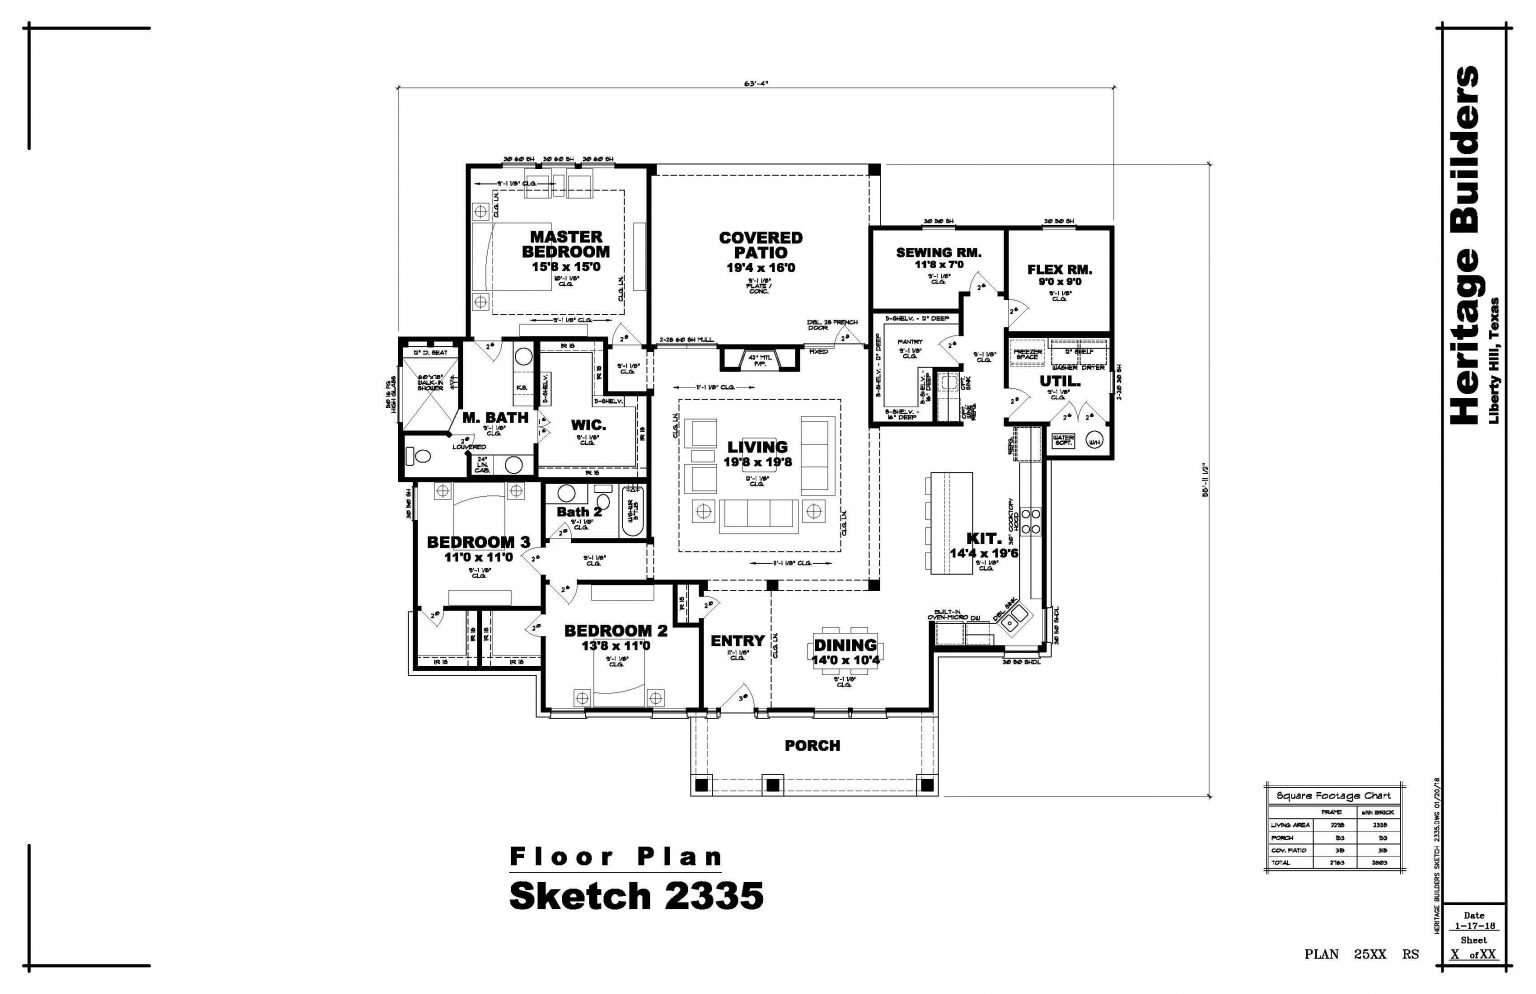 Heritage-Builders-Seth-Floor-Plan